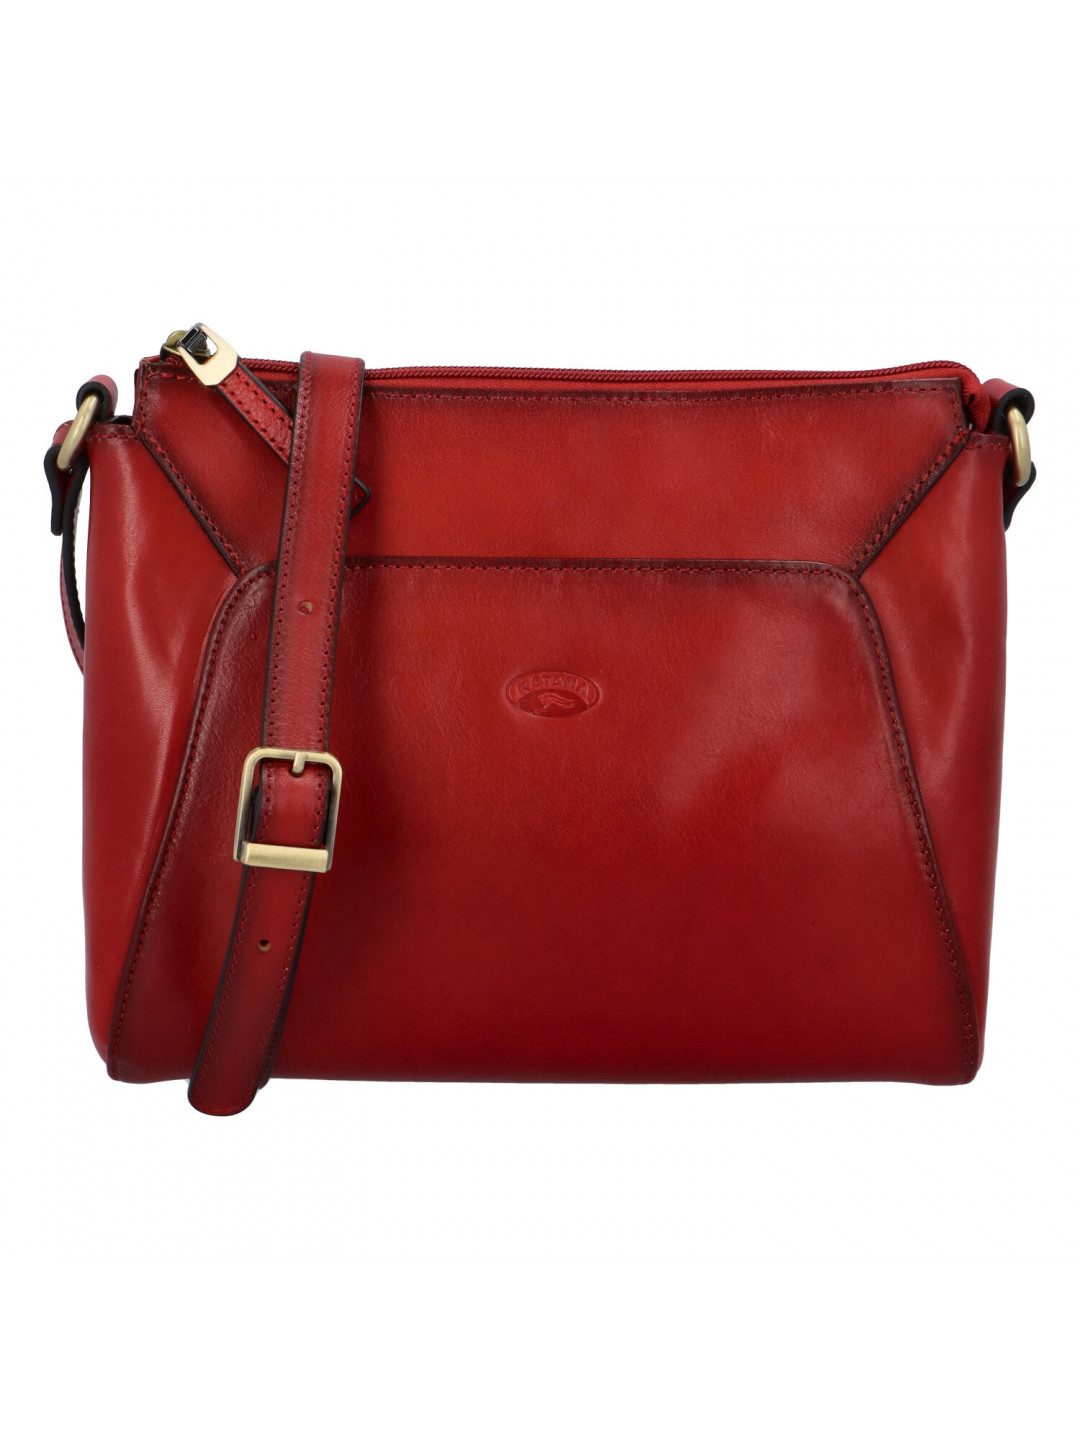 Luxusní dámská kožená kabelka Katana elegant červená